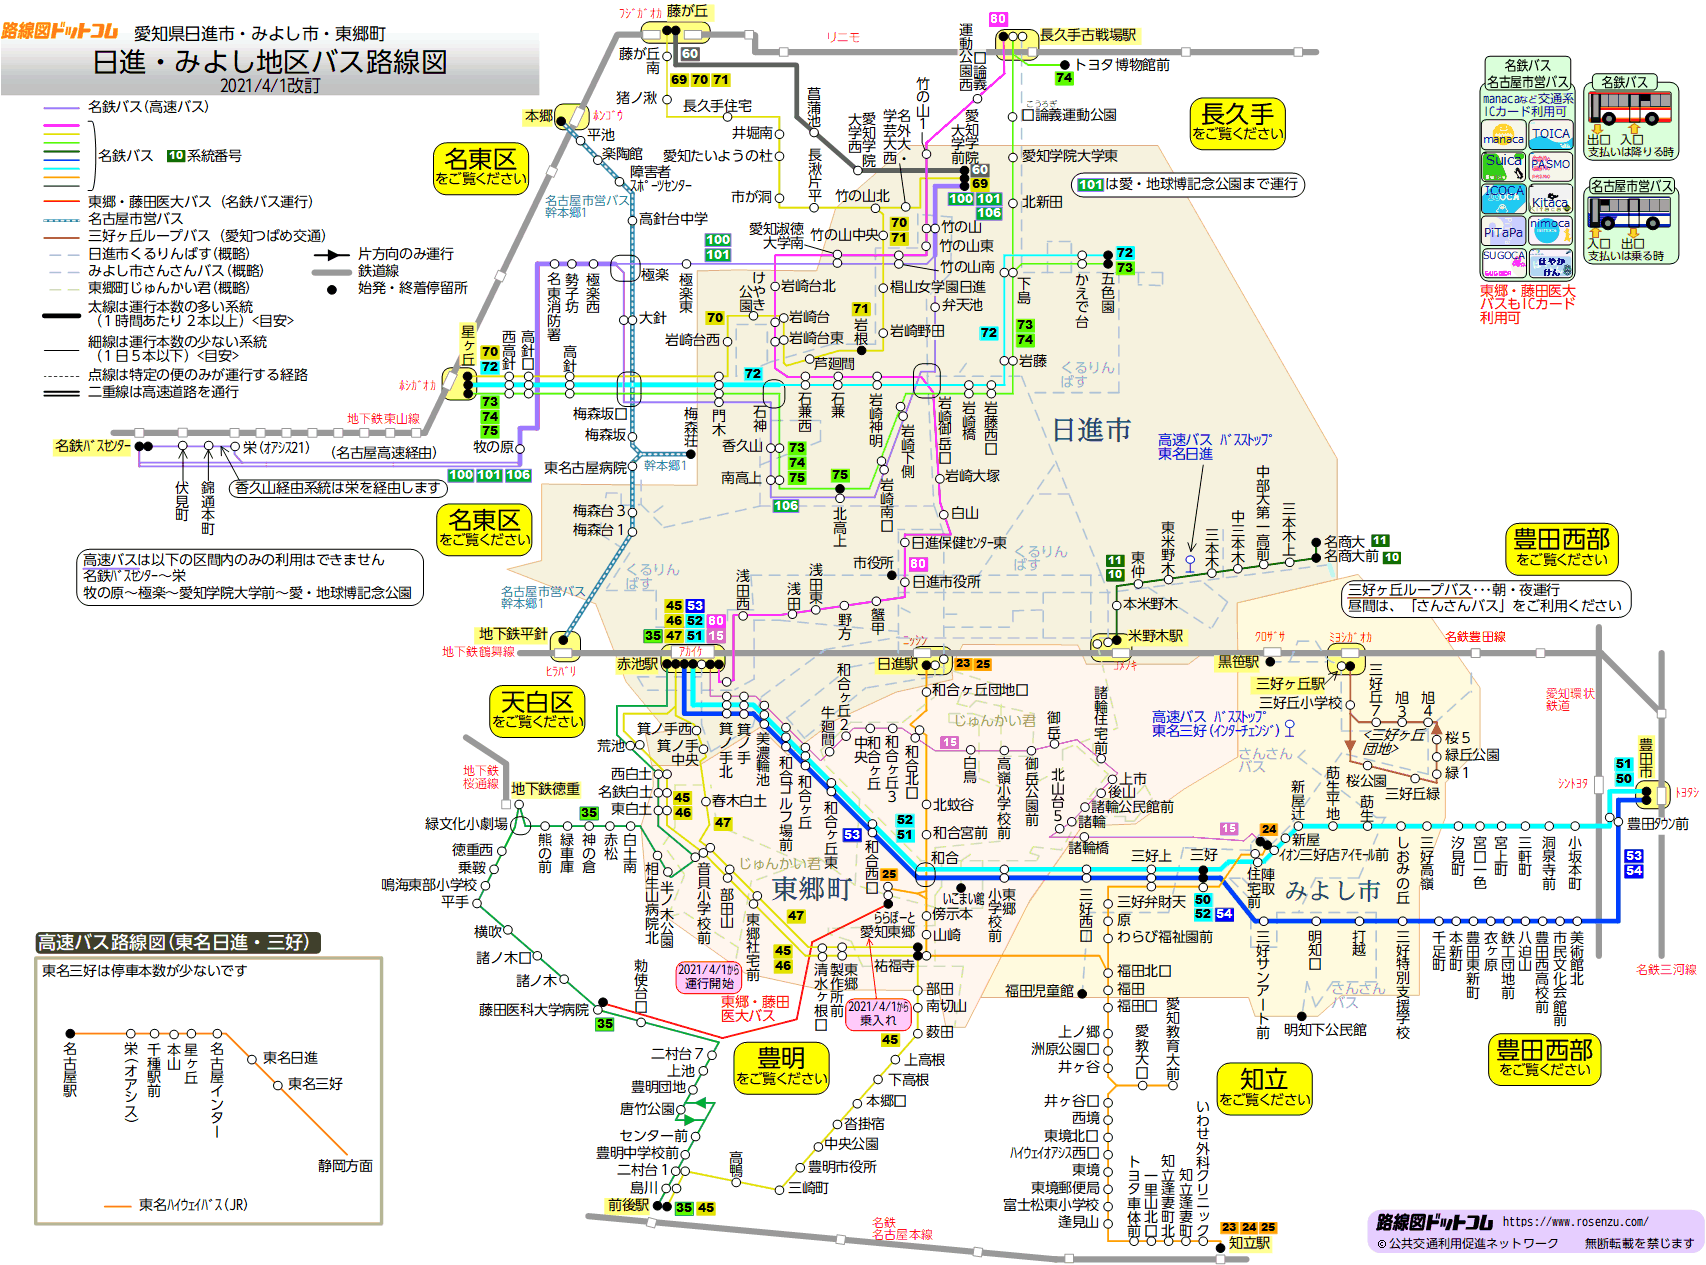 路線図ドットコム 愛知県 日進 みよし地区バス路線図